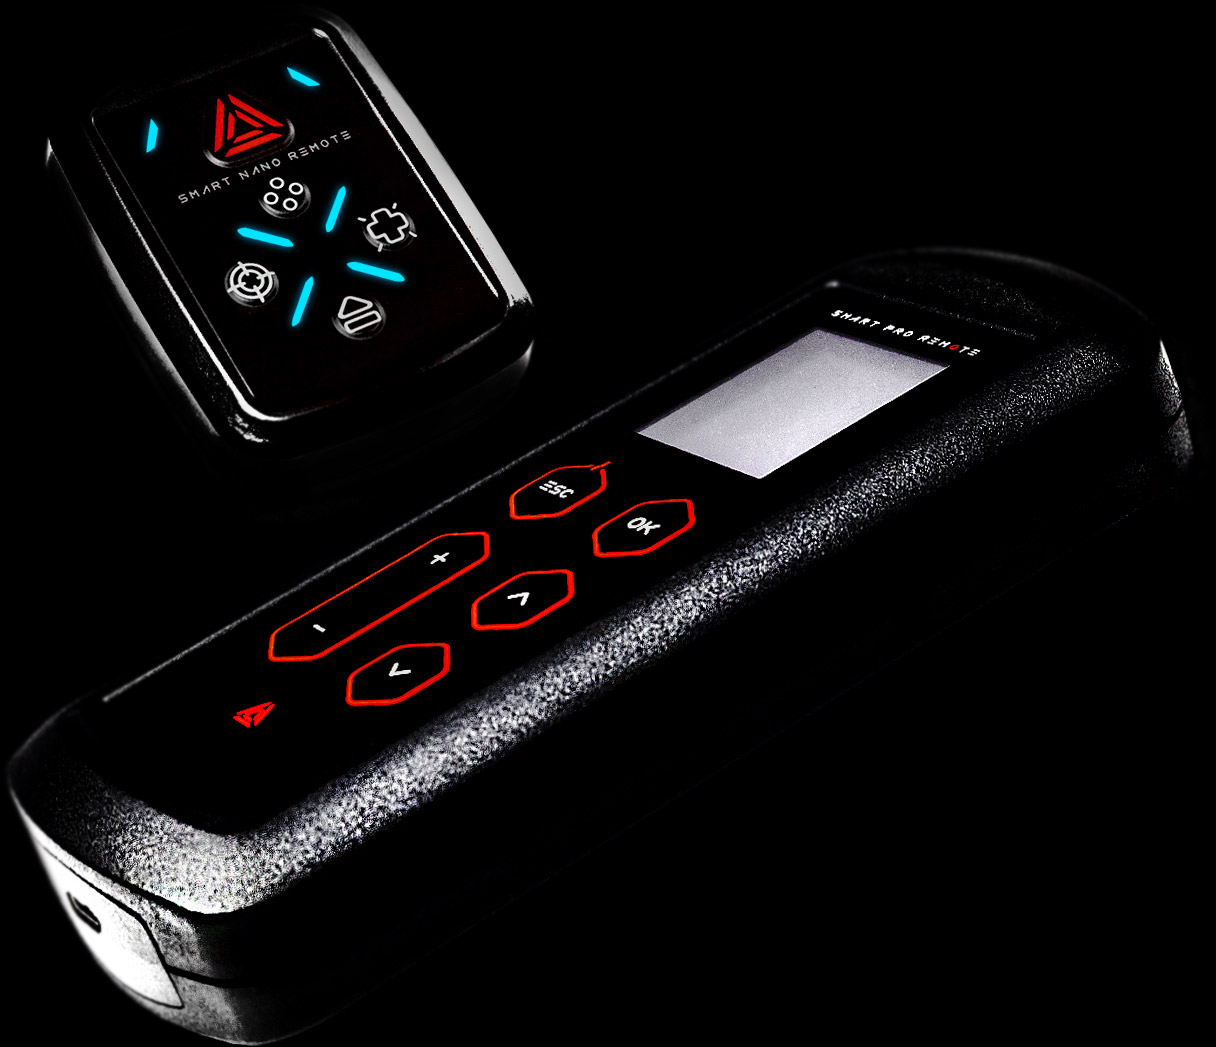 Smart remotes for laser tag